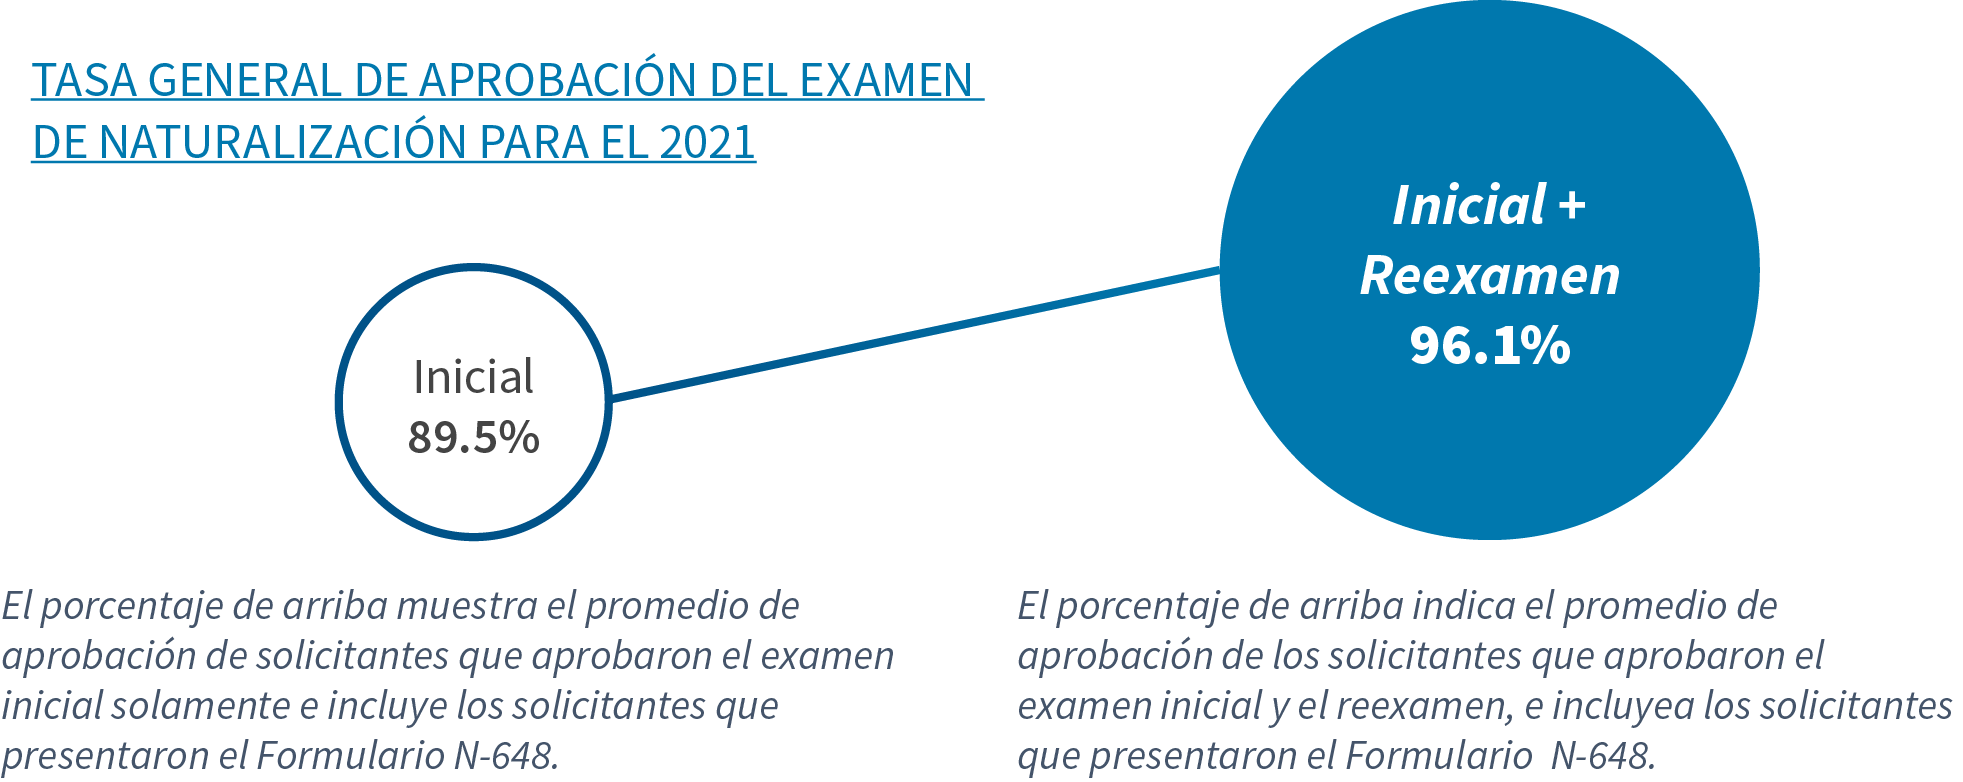 Tasa General de Aprobación del Examen de Naturalización para el 2021